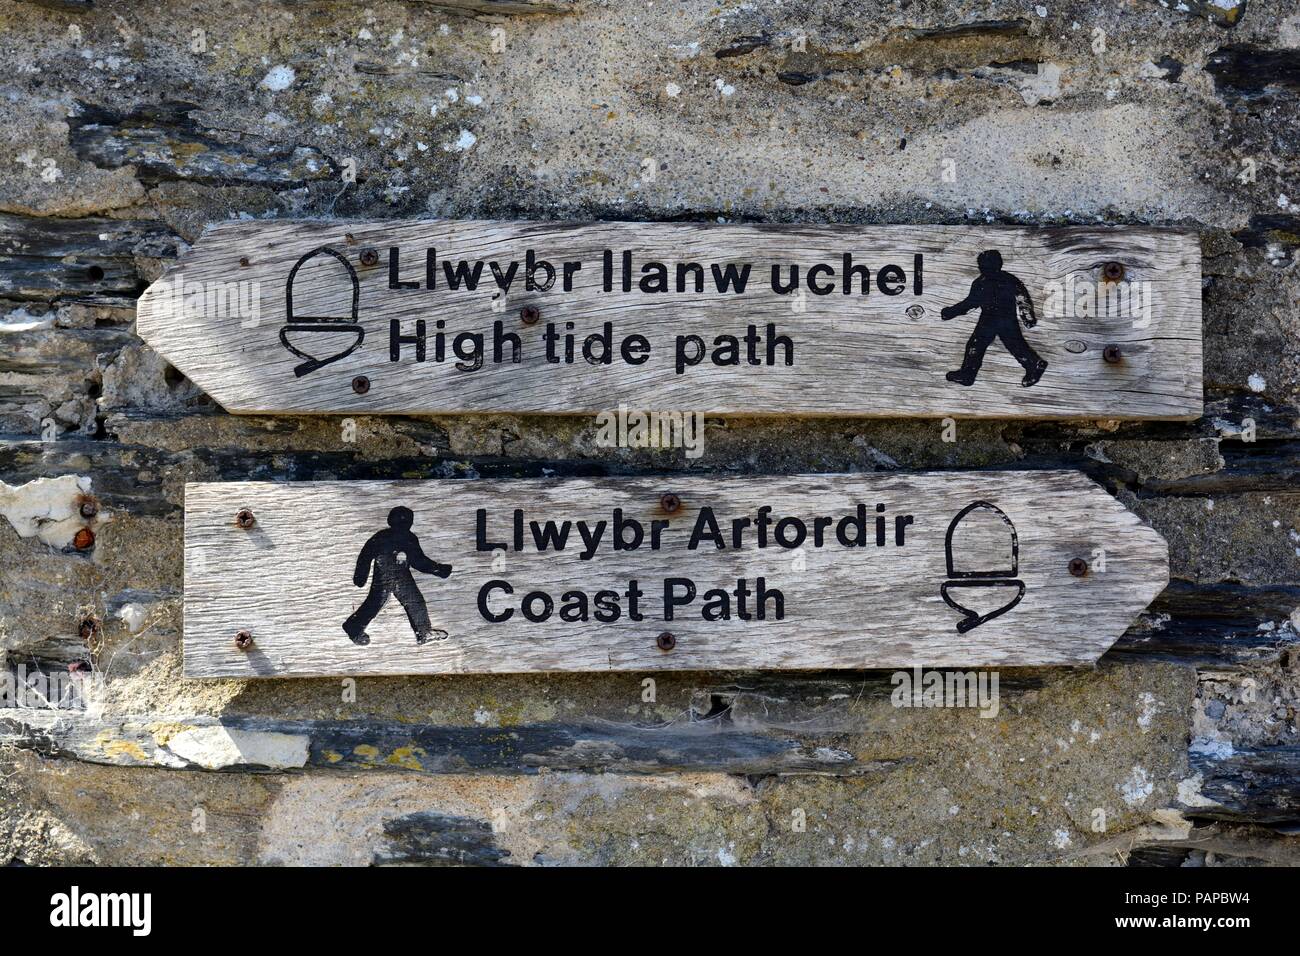 Alte hölzerne zweisprachig Englisch Walisisch Fußweg Wegweisung Flut Pfad und Coastal Path an einer Wand Newport Pembrokeshire Wales Cymru GROSSBRITANNIEN Stockfoto